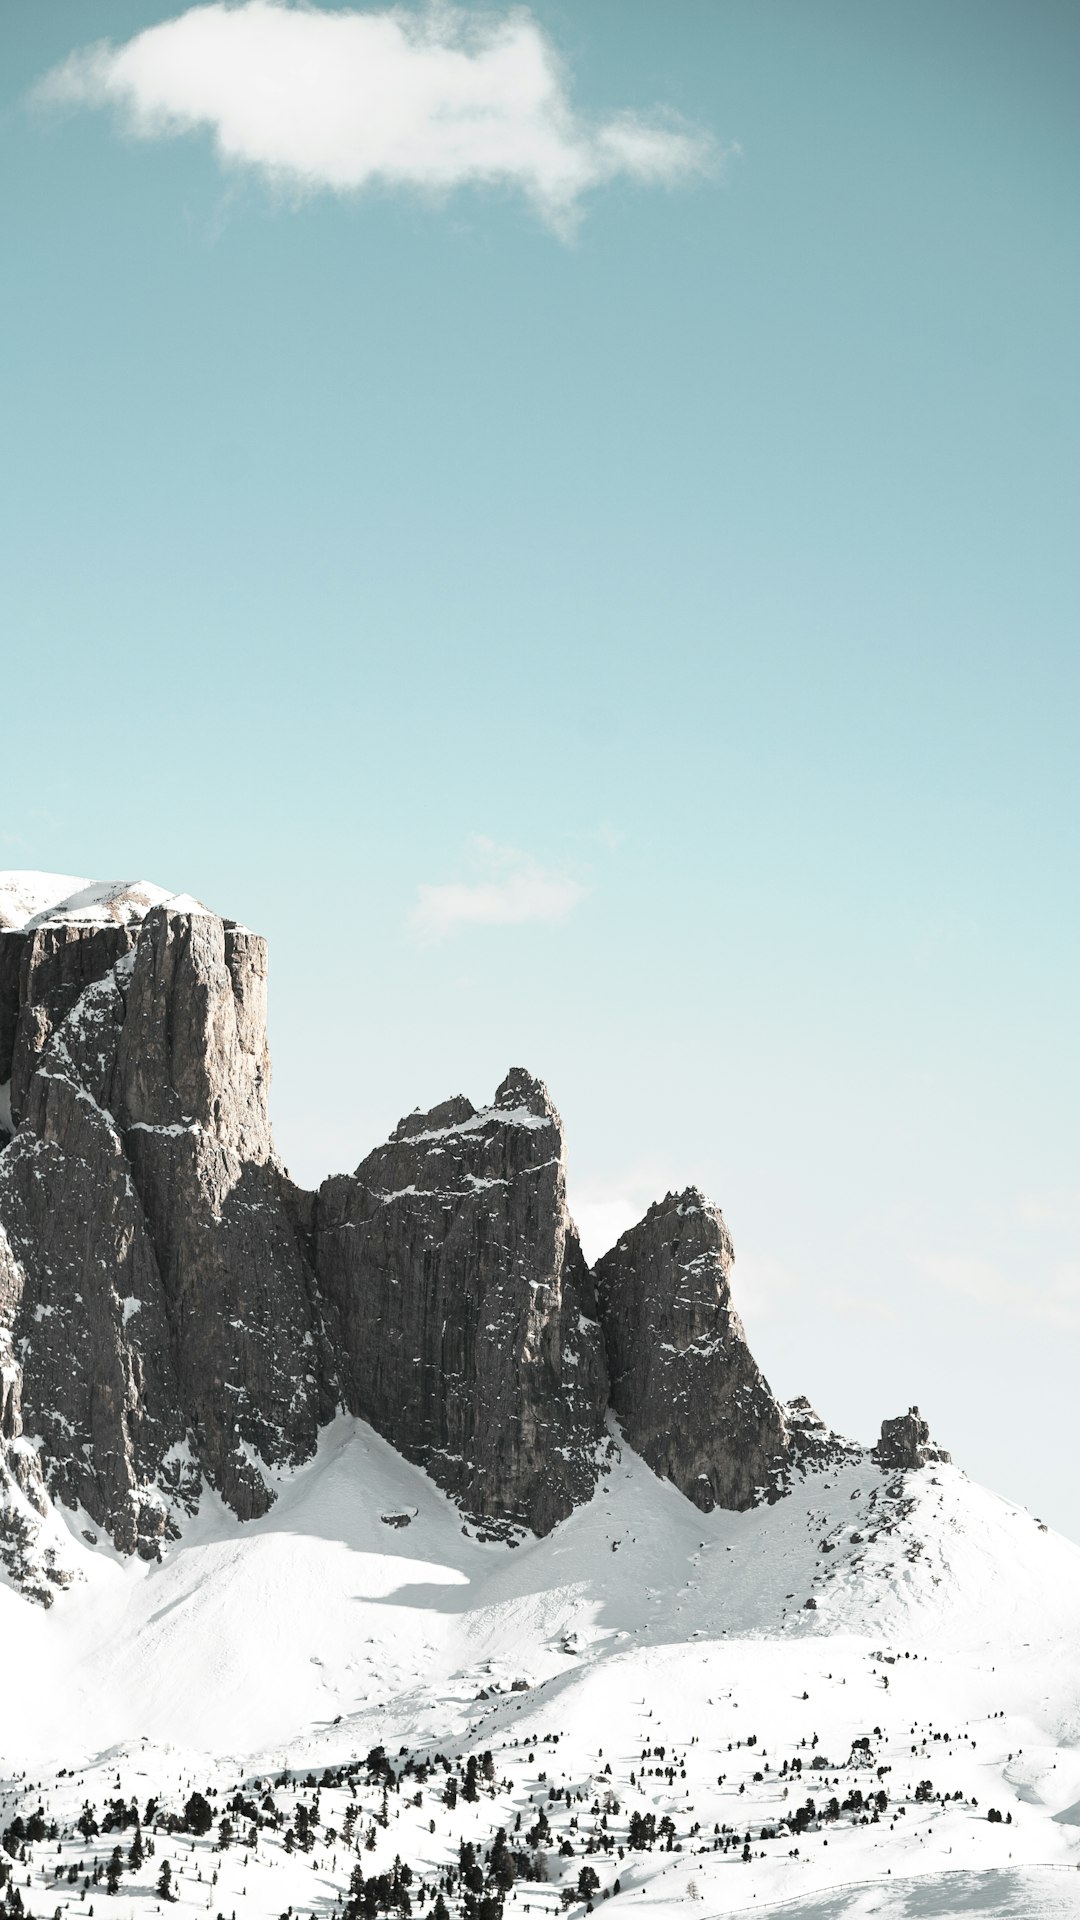 Glacial landform photo spot Dolomiti di Sesto Gruppo Vedrette di Ries